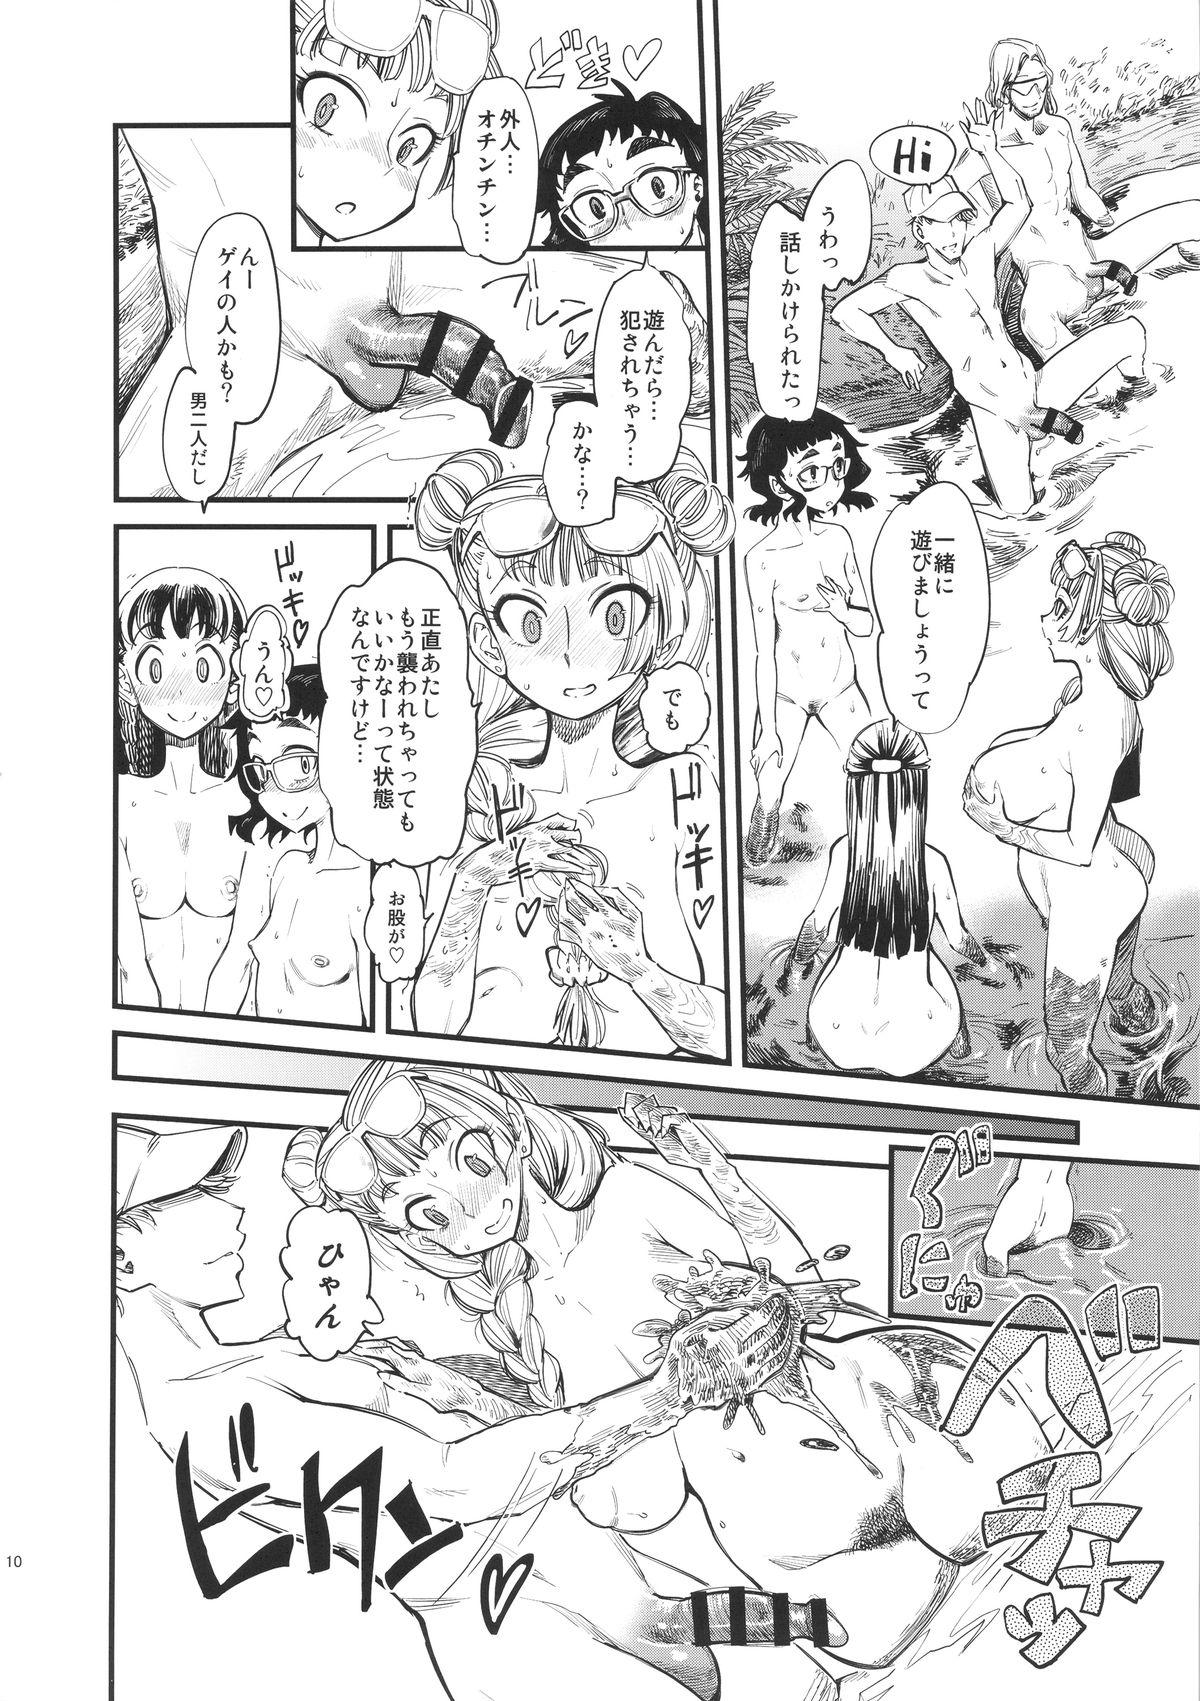 Jizz NMB - Oshiete galko chan Punk - Page 11